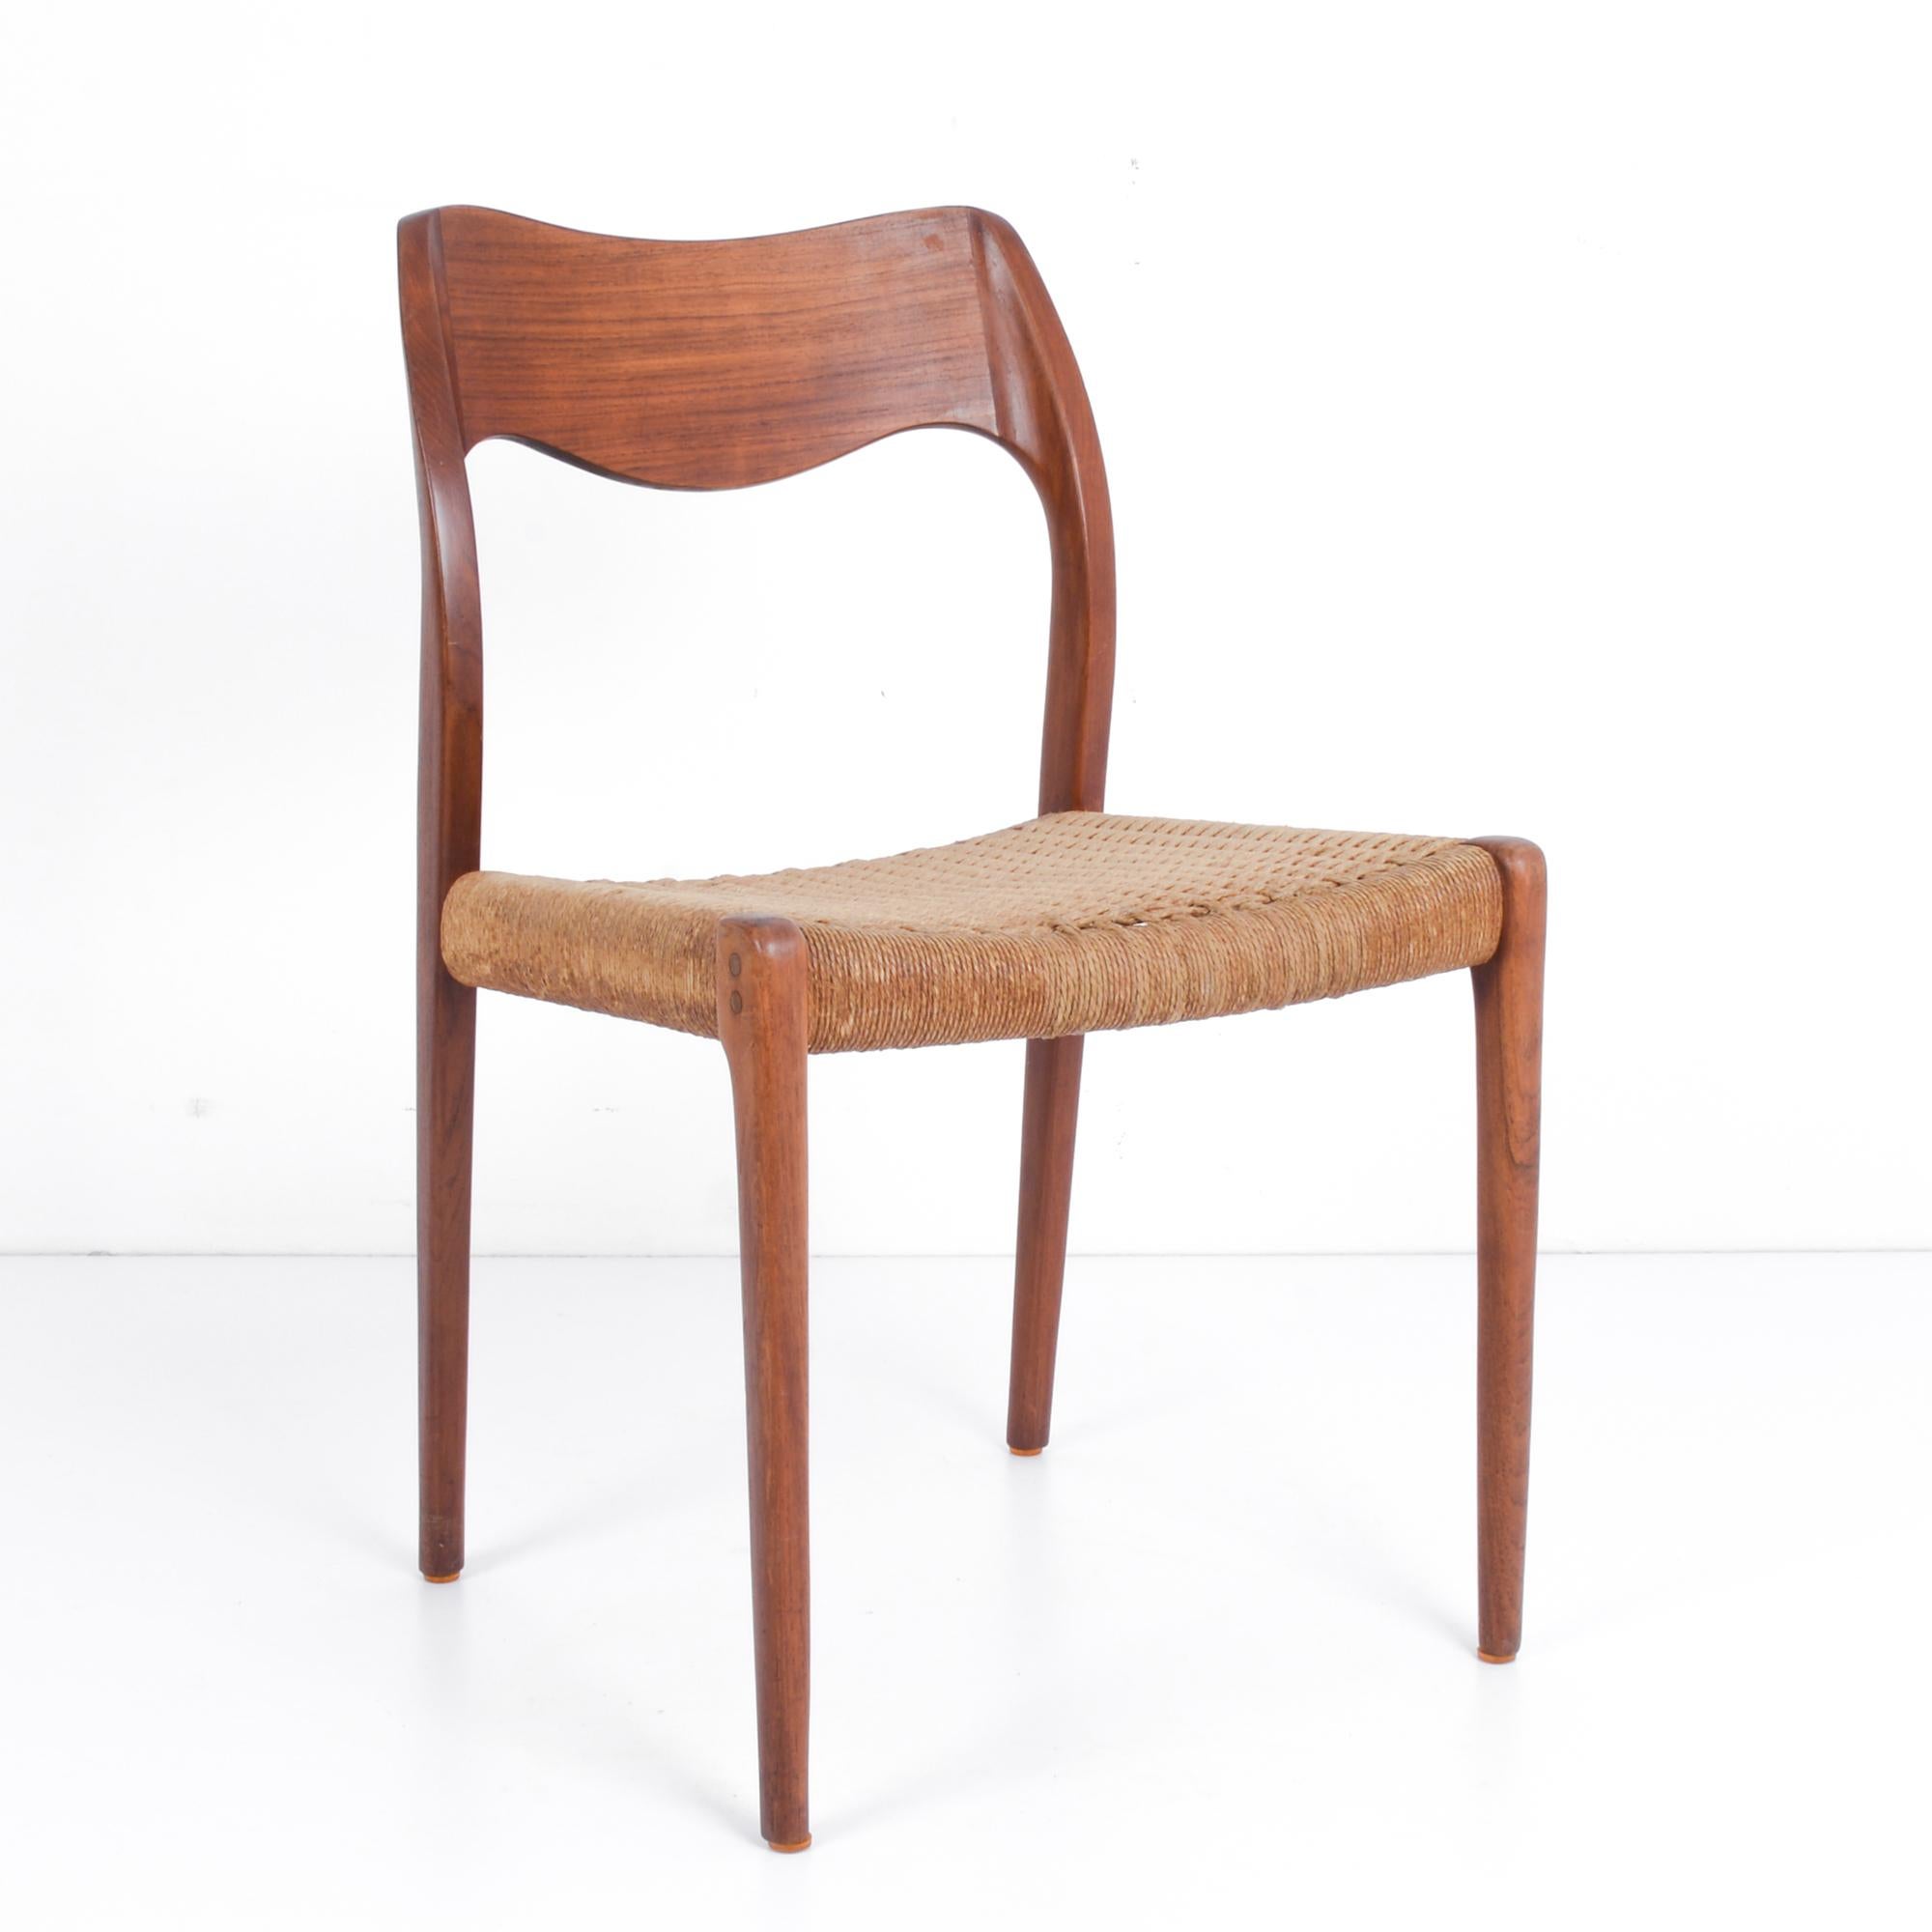 Cette chaise de capitaine conçue par Arne Hovmand/Olsen a été fabriquée au Danemark, vers 1960. Le dossier incurvé et les pieds fuselés de cette élégante chaise mettent en valeur la belle patine du teck. Un siège tissé noué au cadre est en excellent